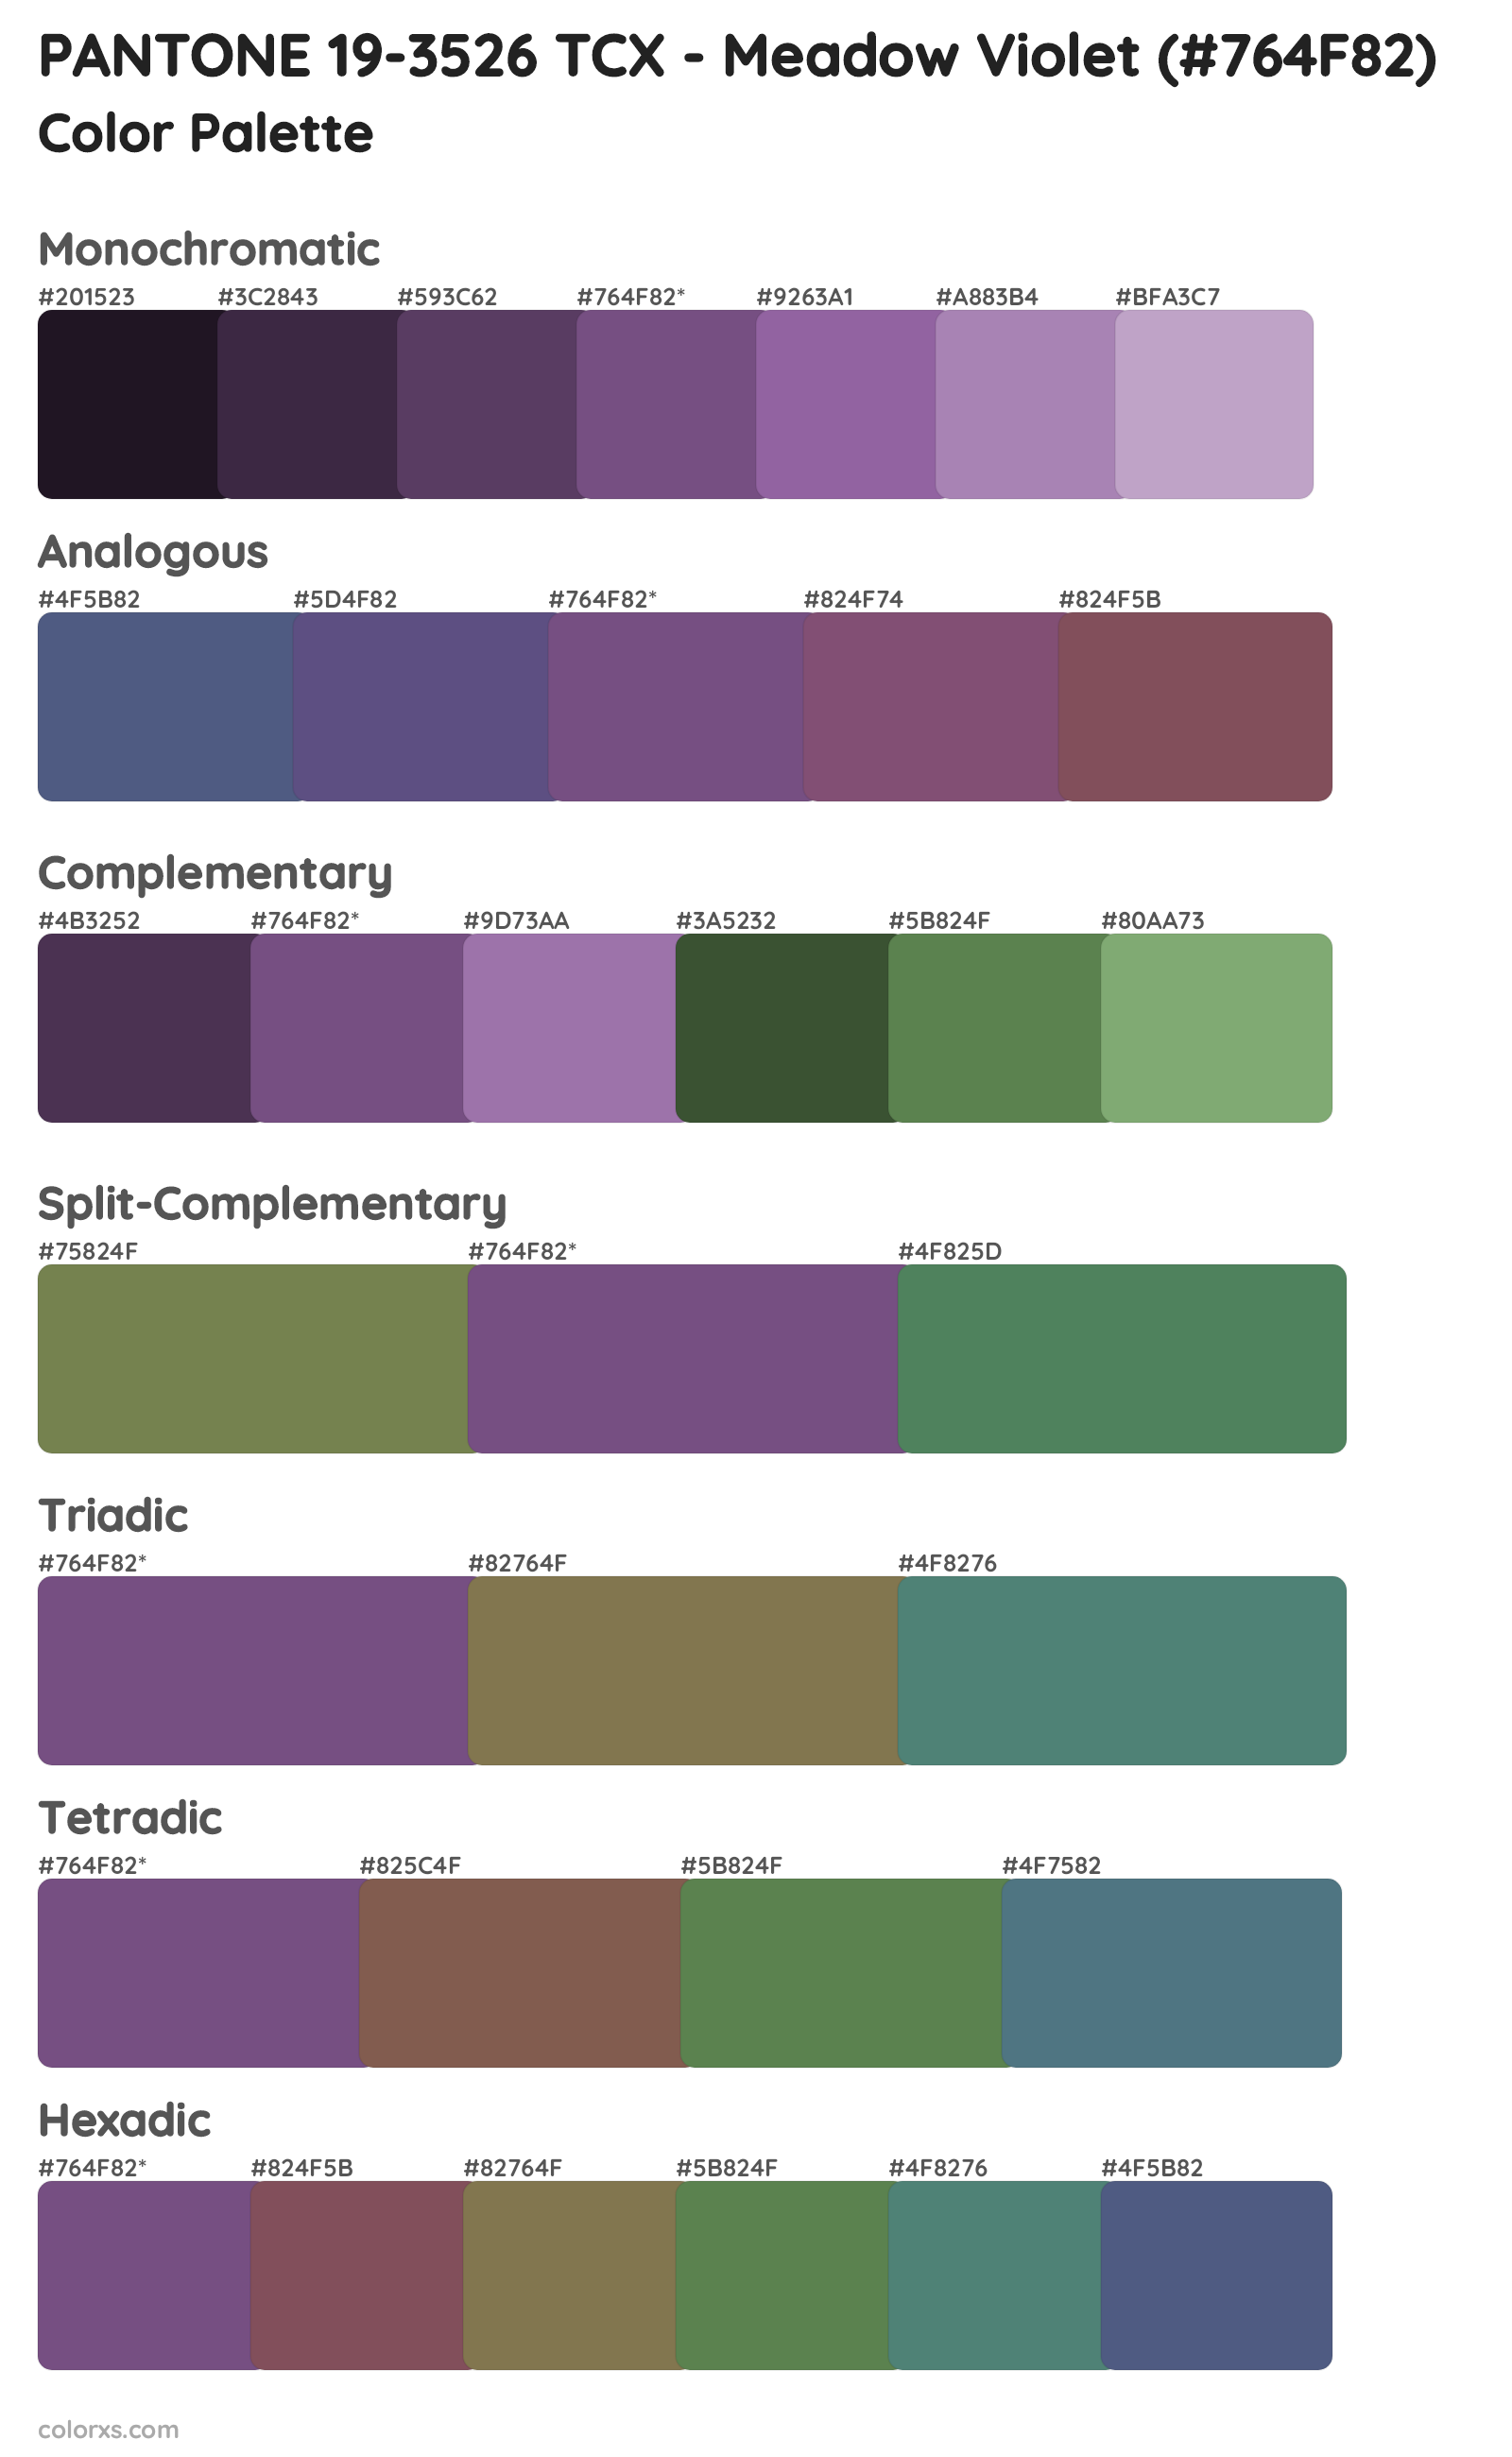 PANTONE 19-3526 TCX - Meadow Violet Color Scheme Palettes